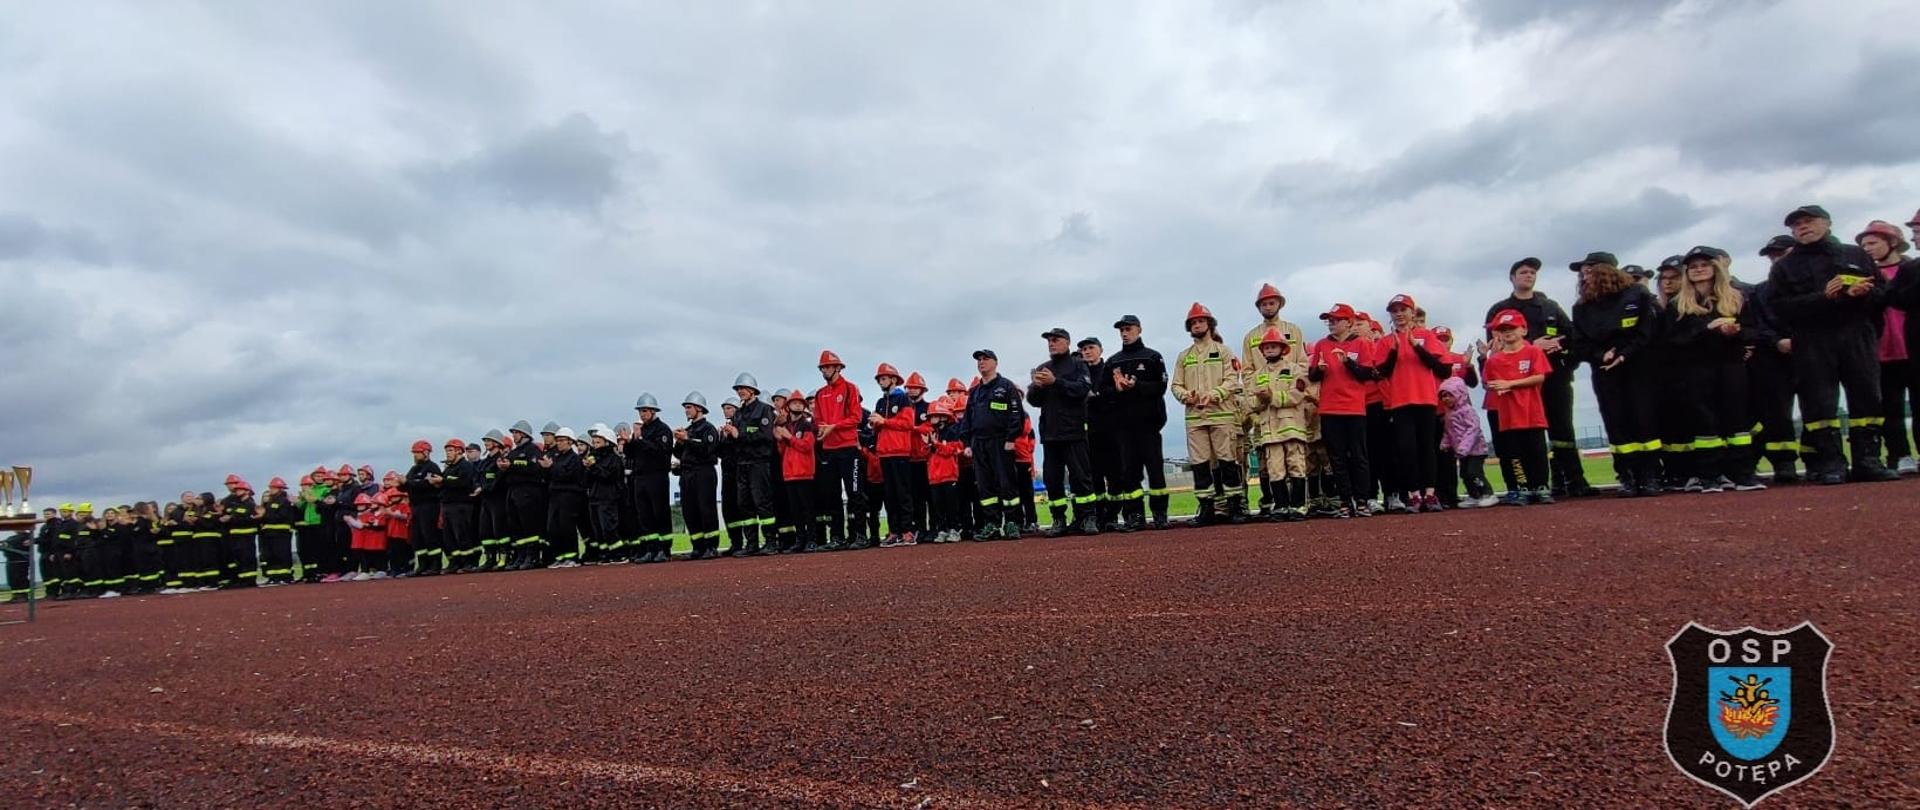 Strażacy w mundurach stoją w szeregu na boisku